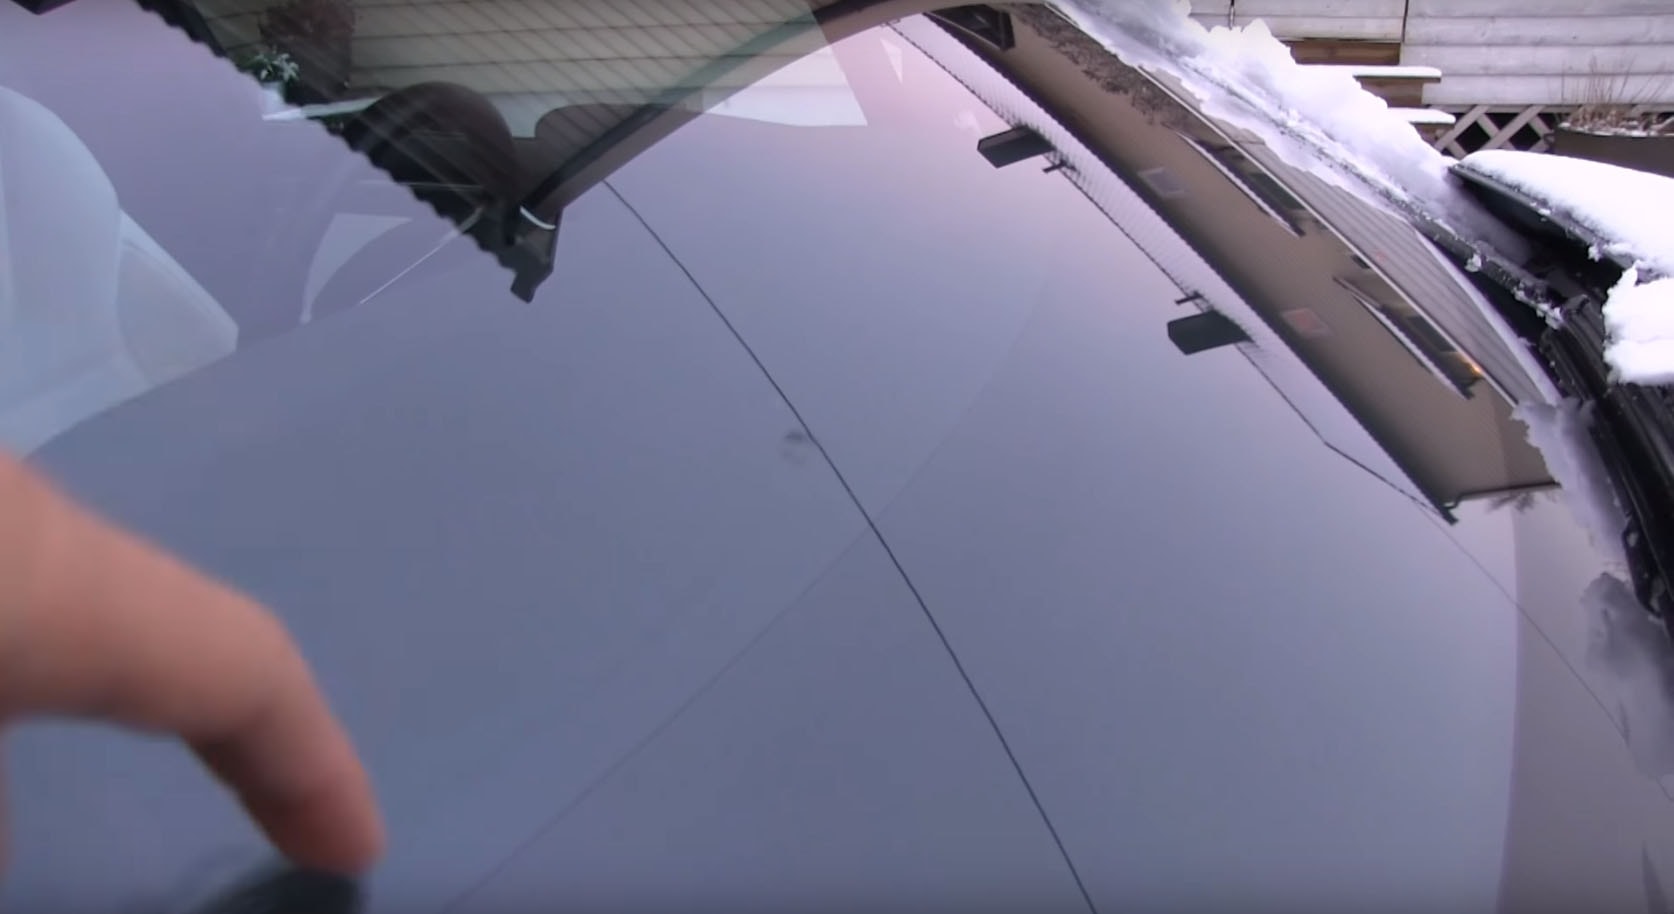 Riss in der Windschutzscheibe - zu Tesla oder Carglass? - Model X